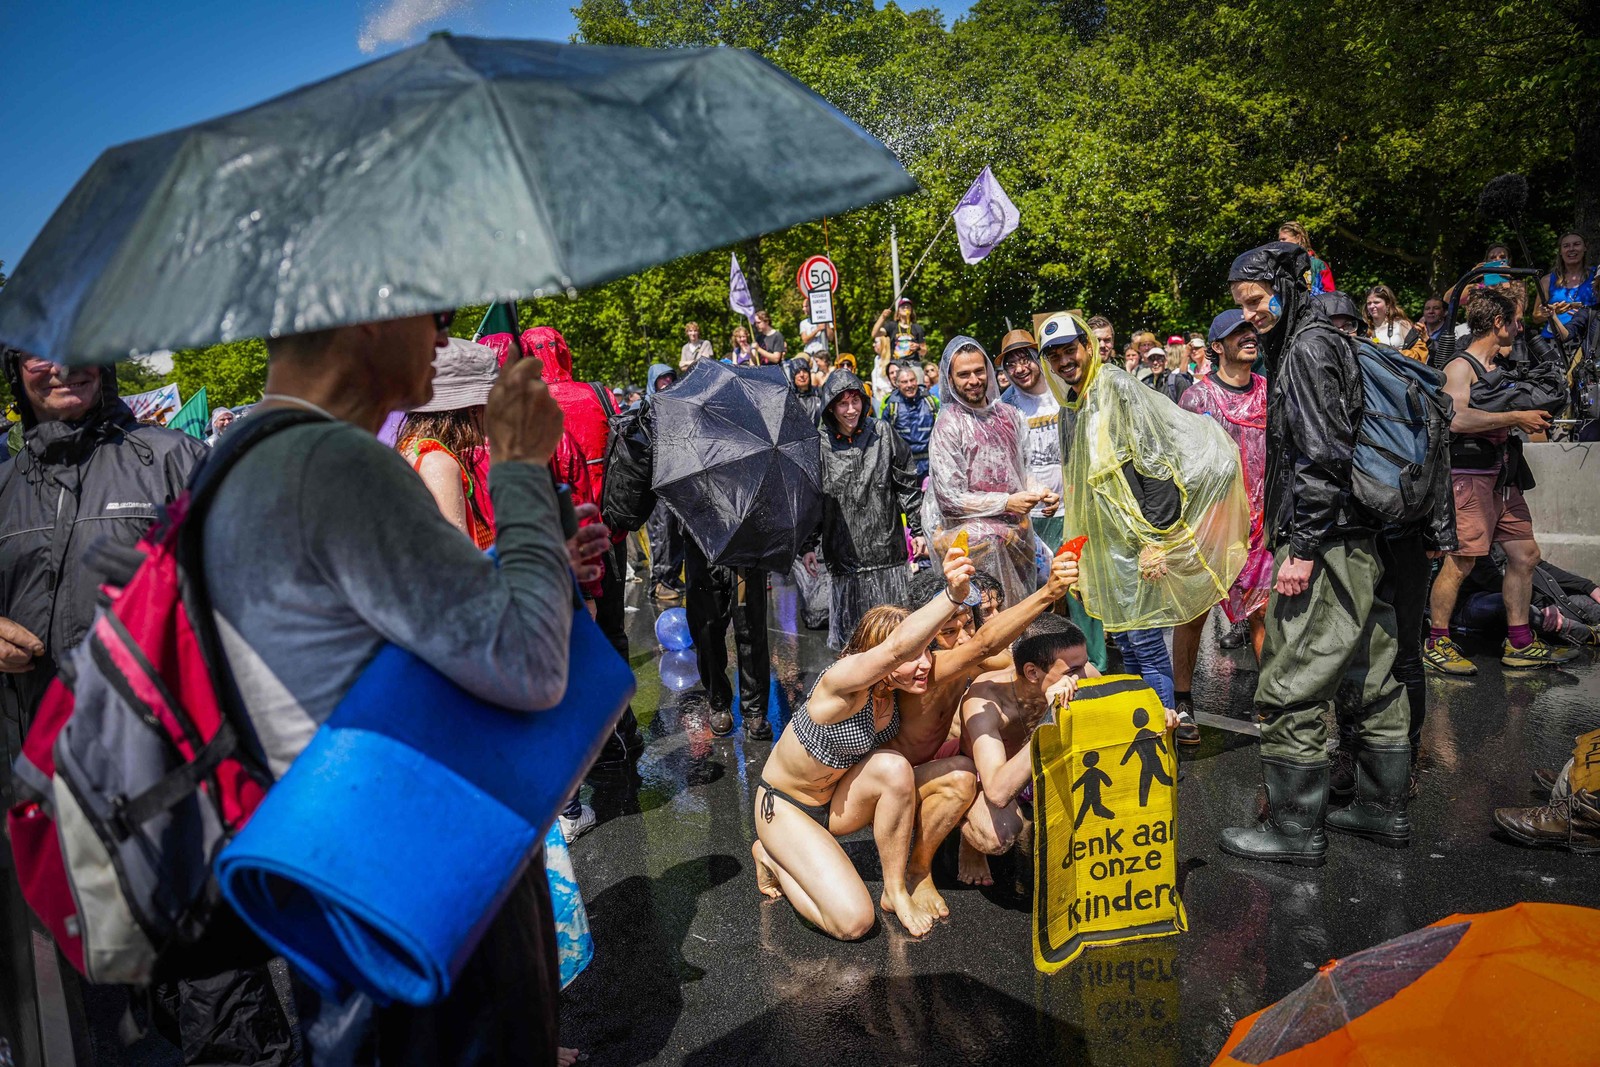 Ativistas do Extinction Rebellion bloqueiam a A12 contra subsídios fósseis em Haia. — Foto: Phil NIJHUIS / ANP / AFP